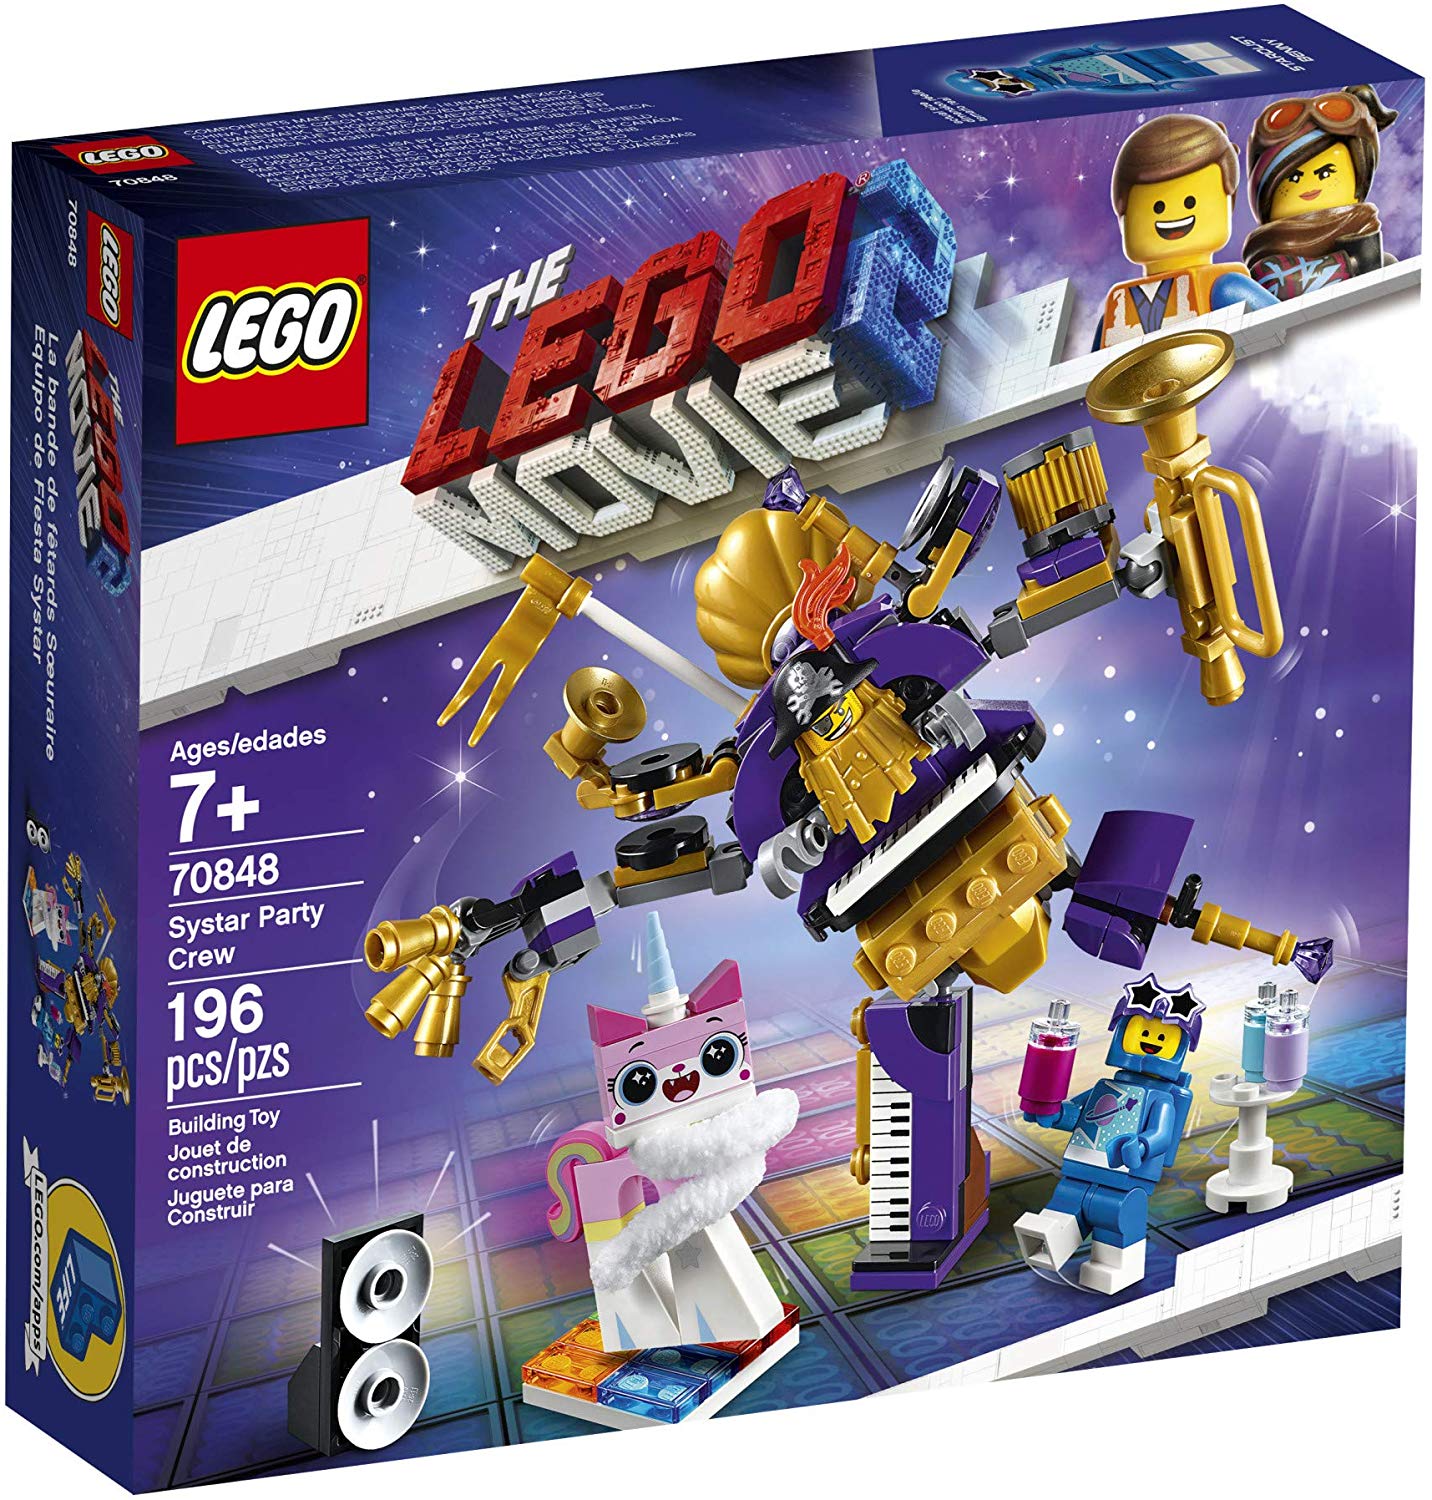 NEW LEGO Fabu-Fan FROM SET 70813 THE LEGO MOVIE tlm042